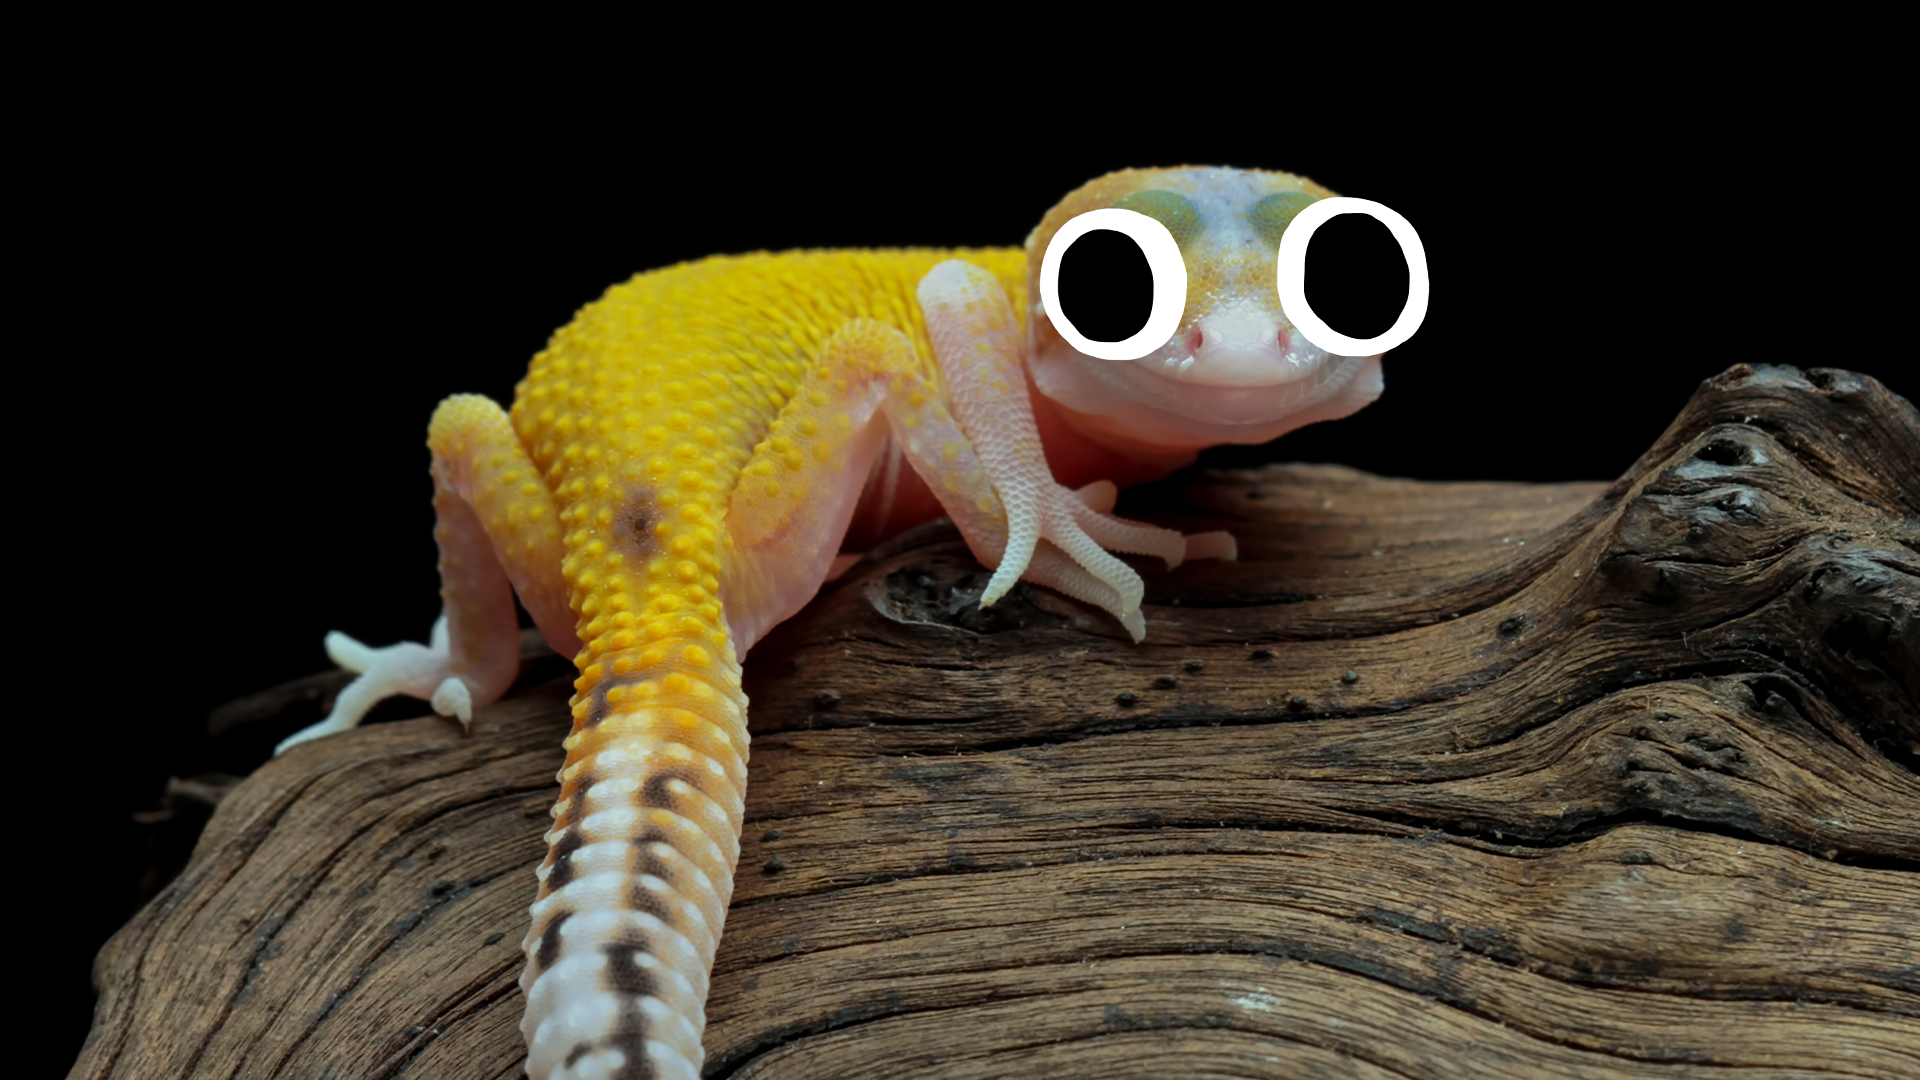 Cute little gecko